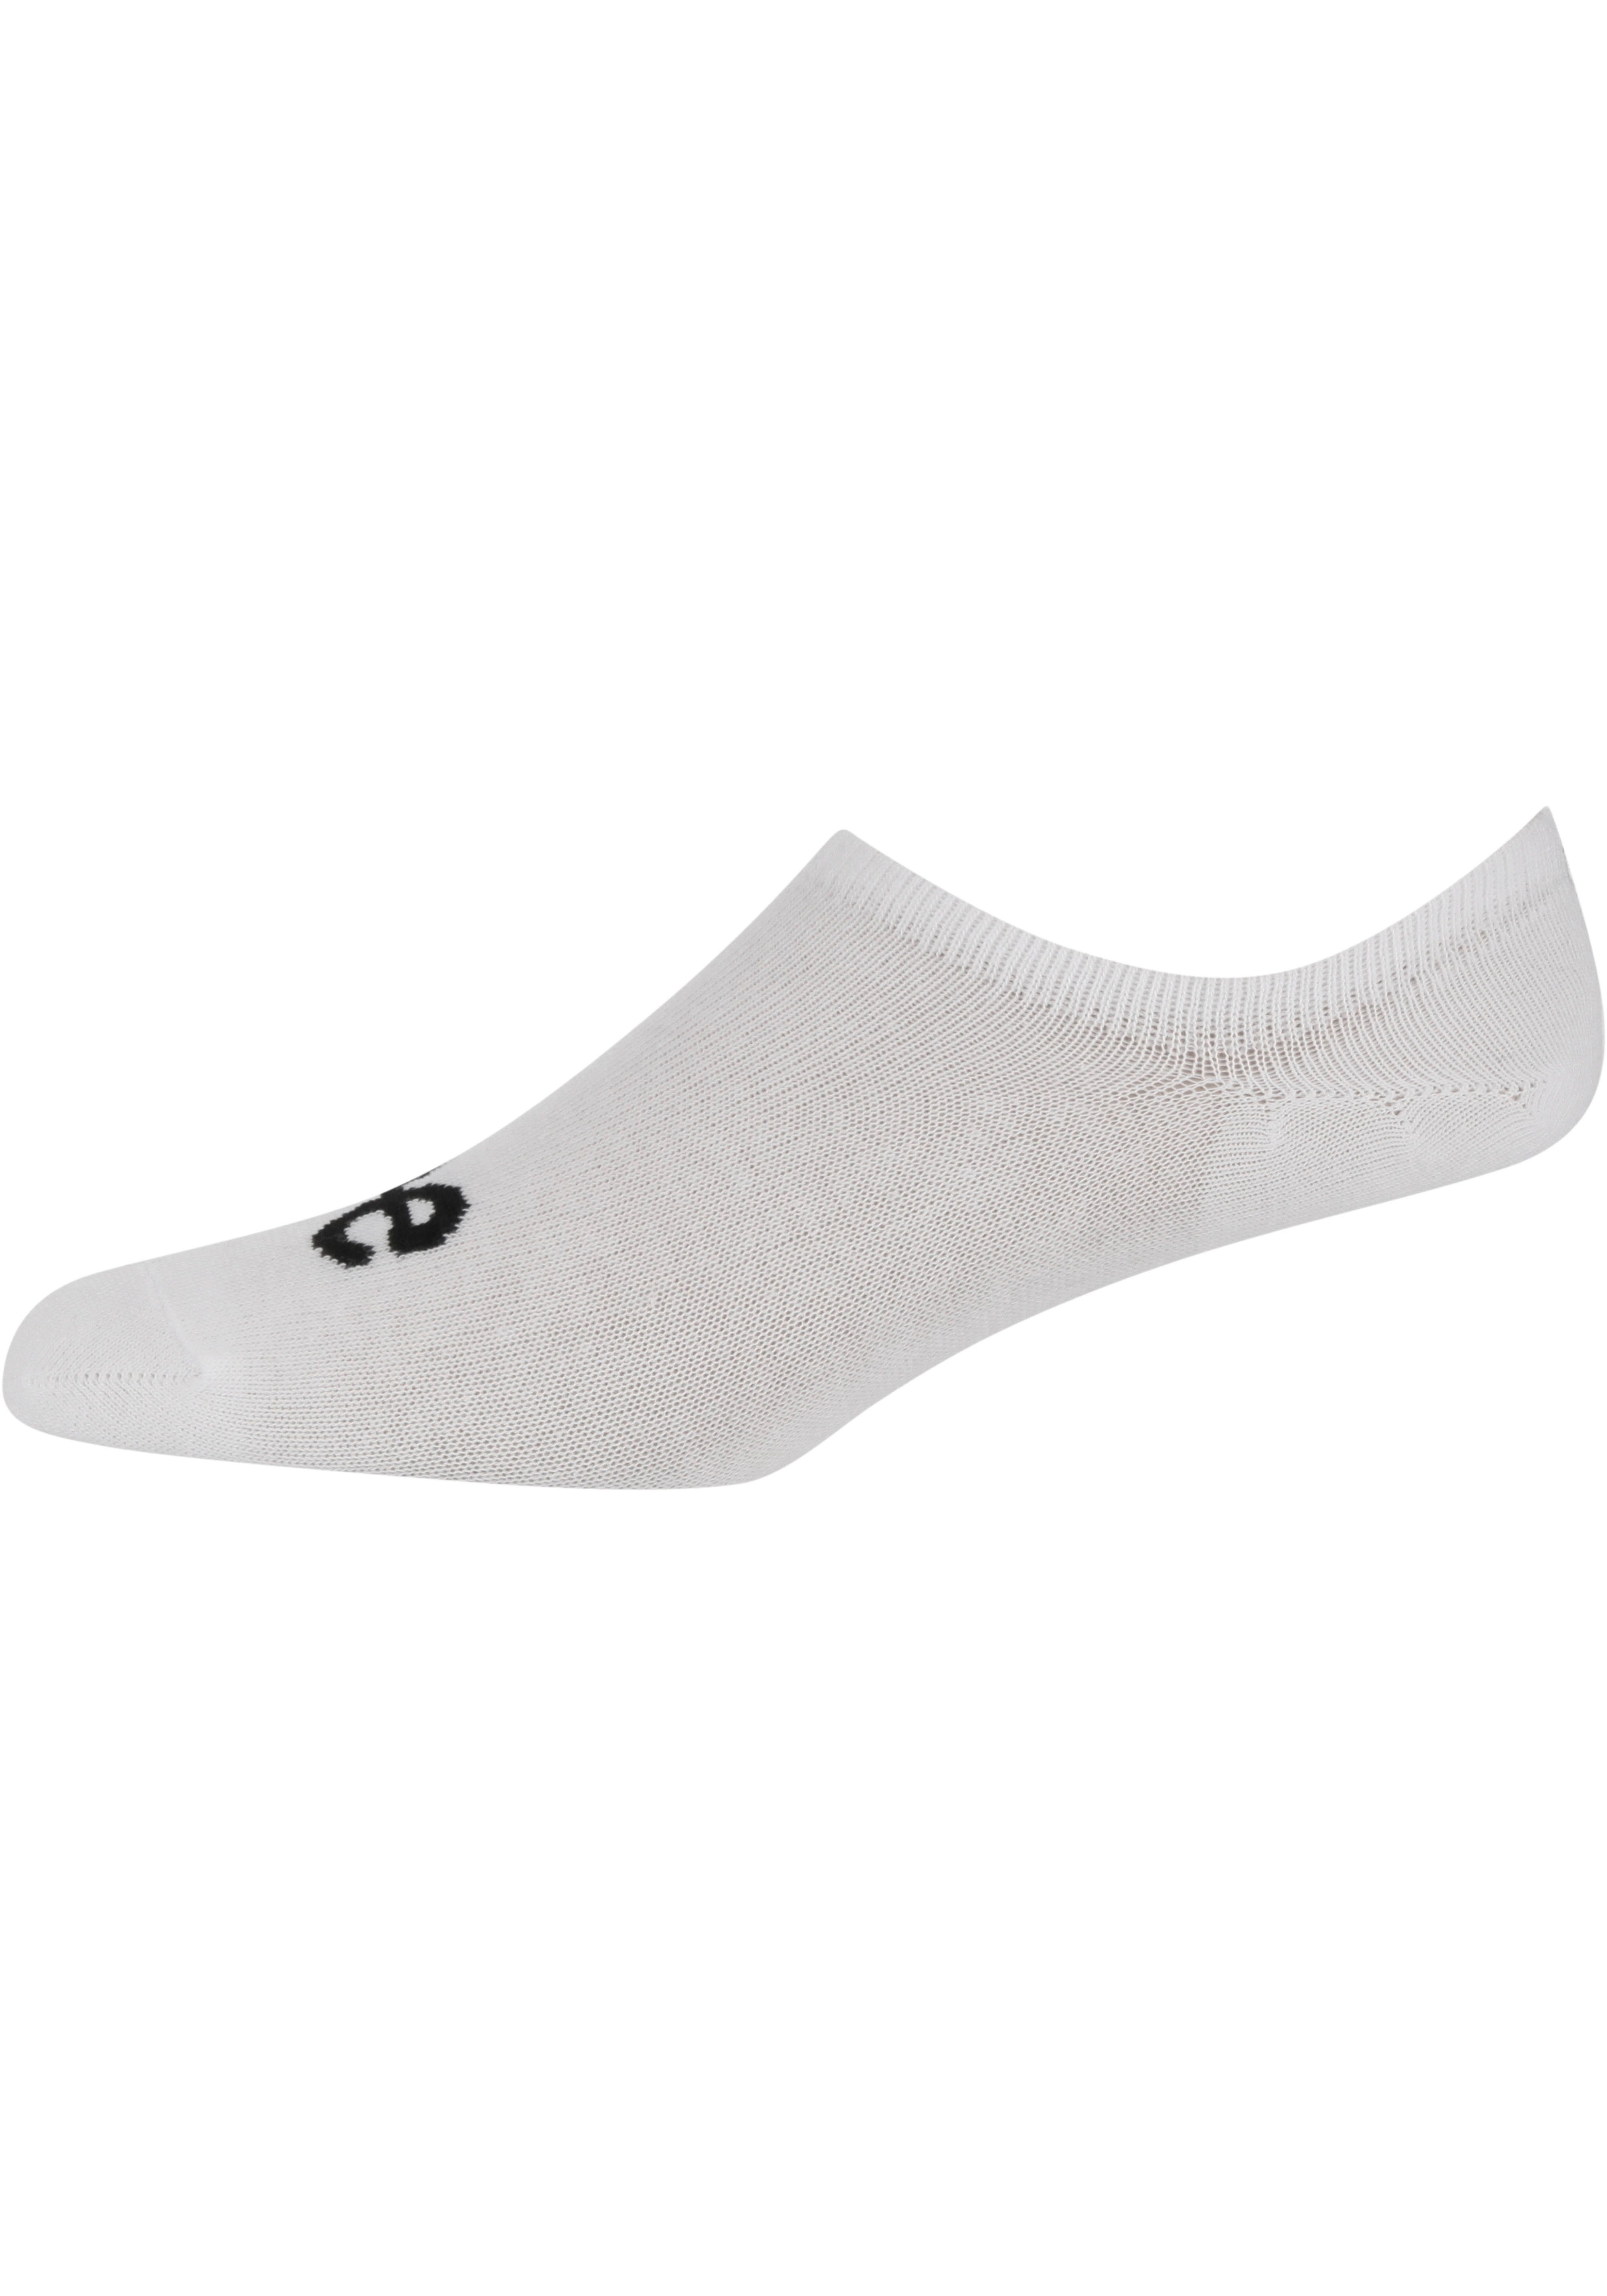 Socks Unisex Invisible Black/White/Grey Marl 3-Paar) CHRIS Sneakersocken (Packung, Lee Lee®